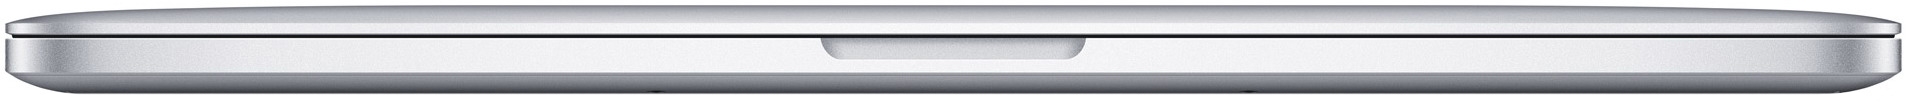 Macbook Pro Retina 15', Early 2013 ME664 б/у